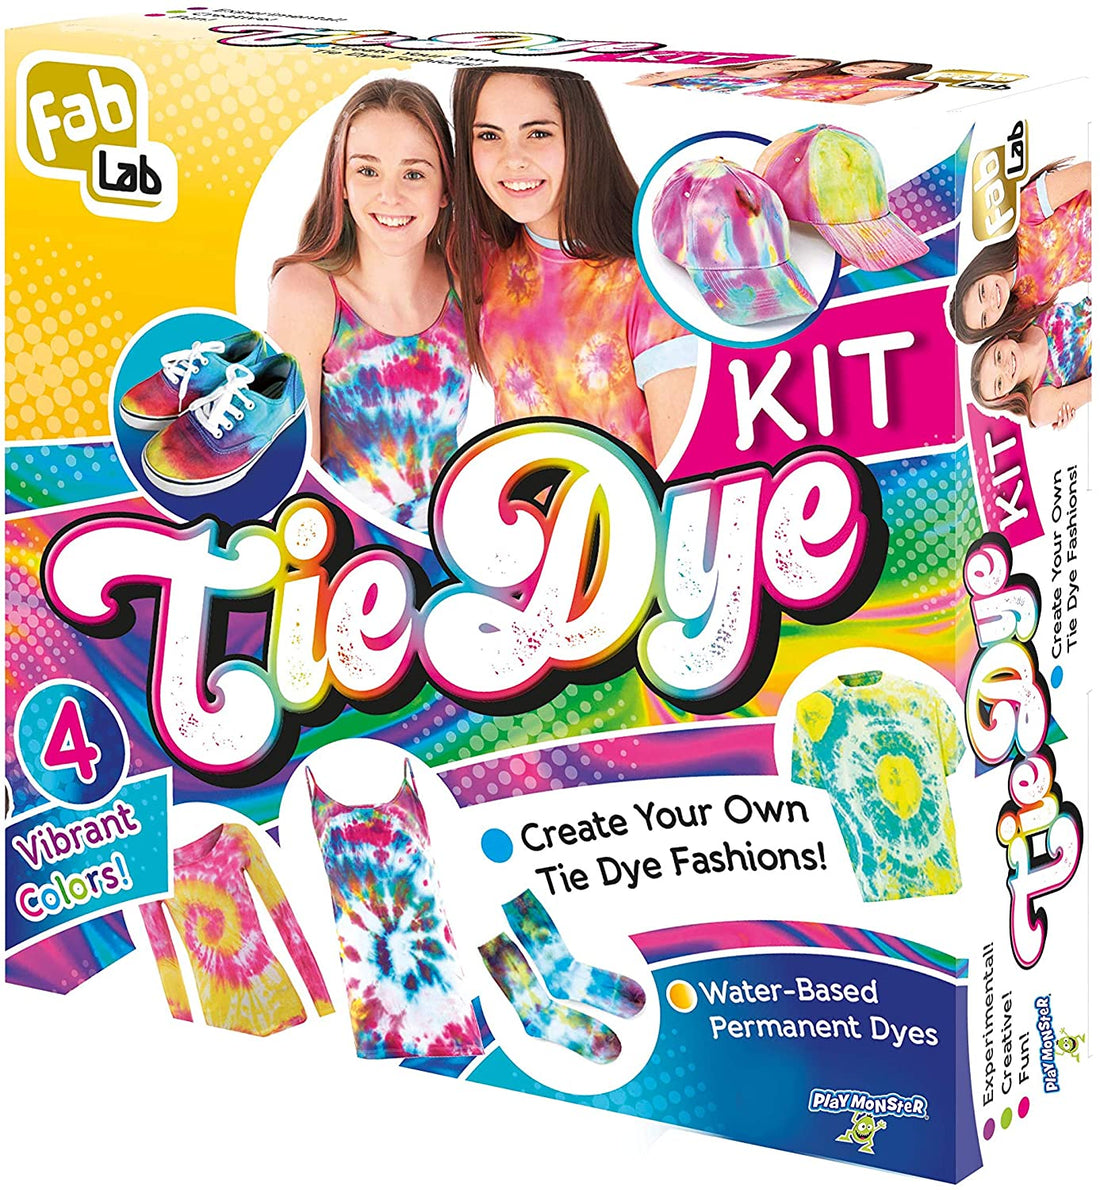 Fab Lab Tie Dye Kit